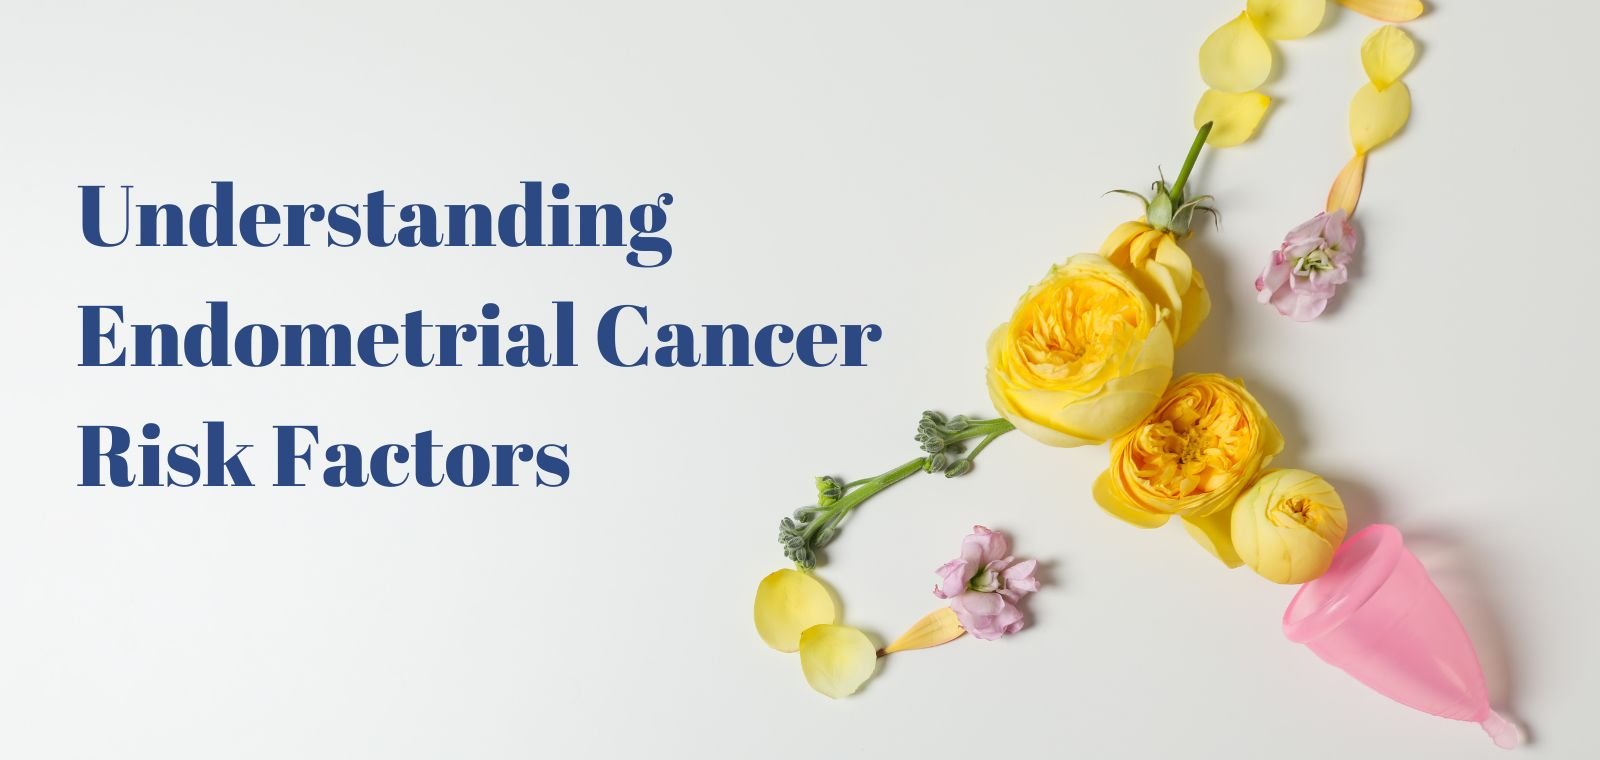 Endometrial Cancer risk factors